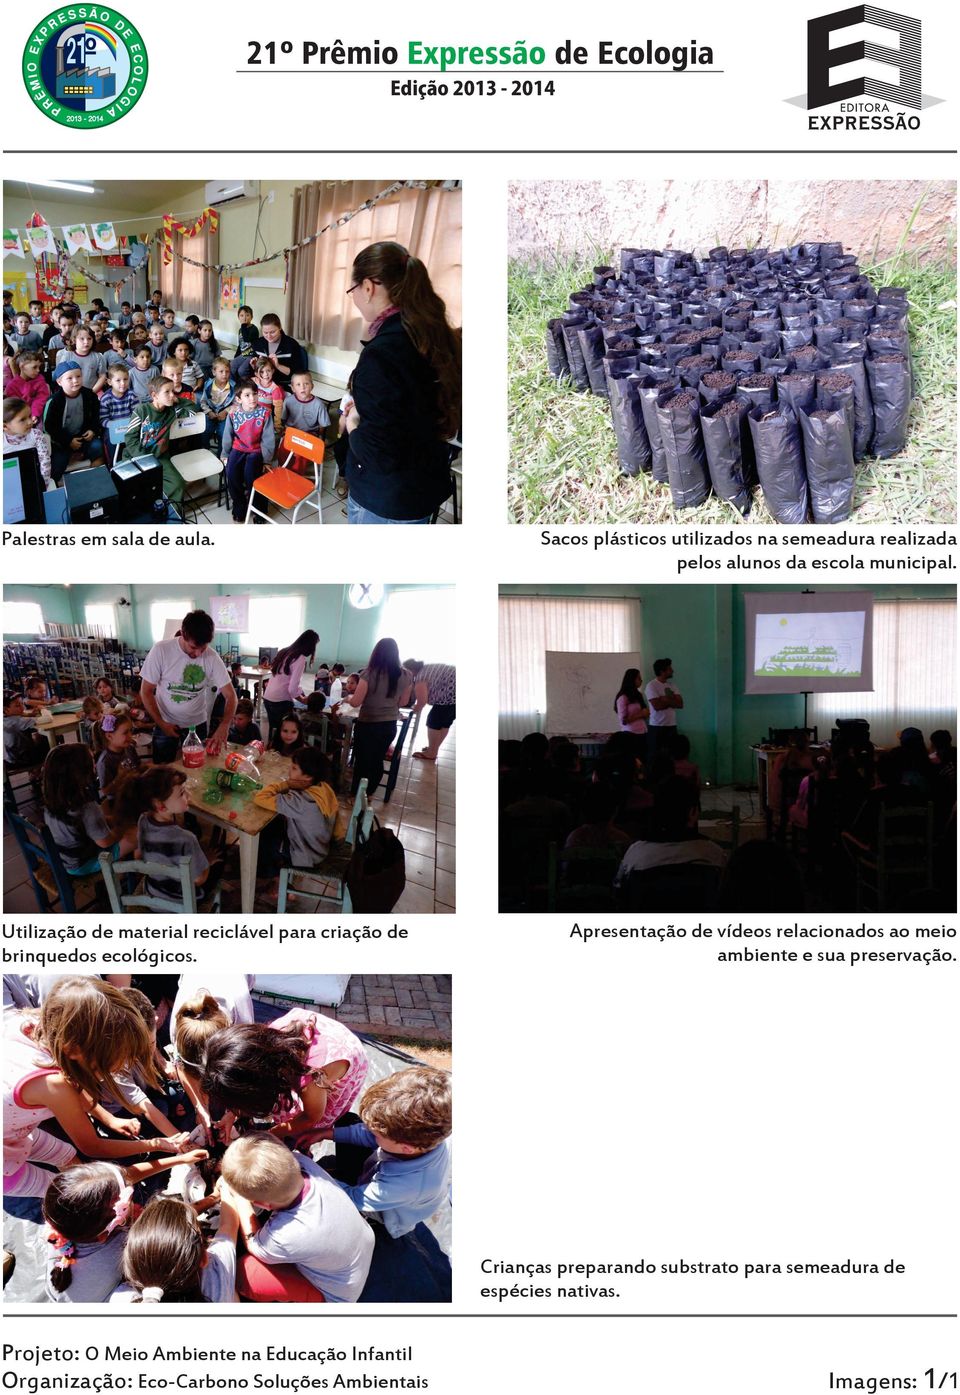 Sacos plásticos utilizados na semeadura realizada pelos alunos da escola municipal.